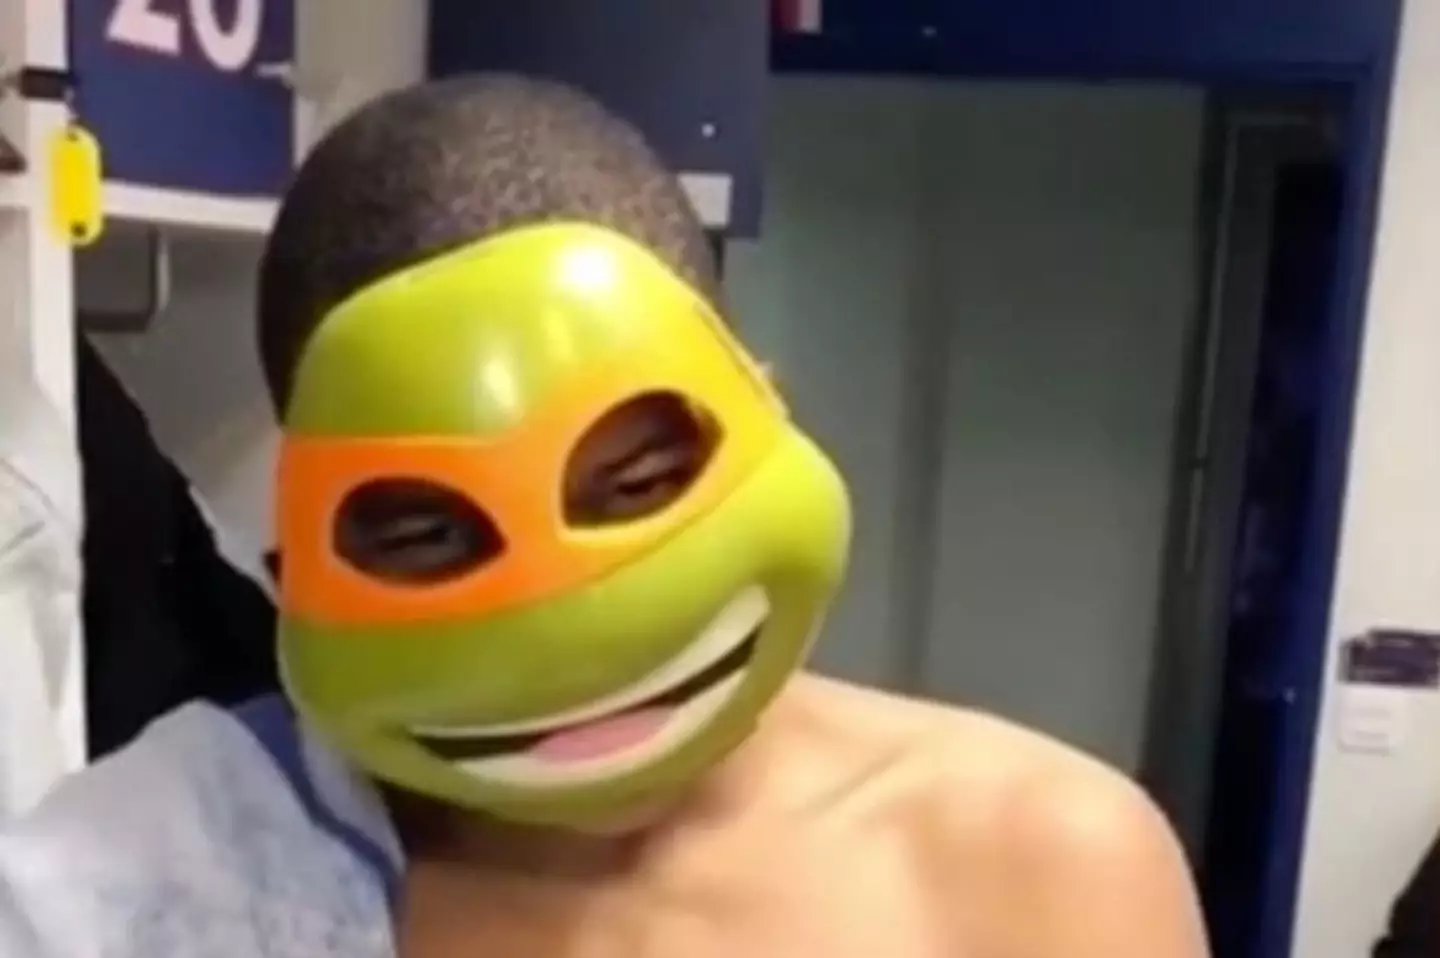 Mbappe in the Teenage Mutant Ninja Turtles mask. (Image